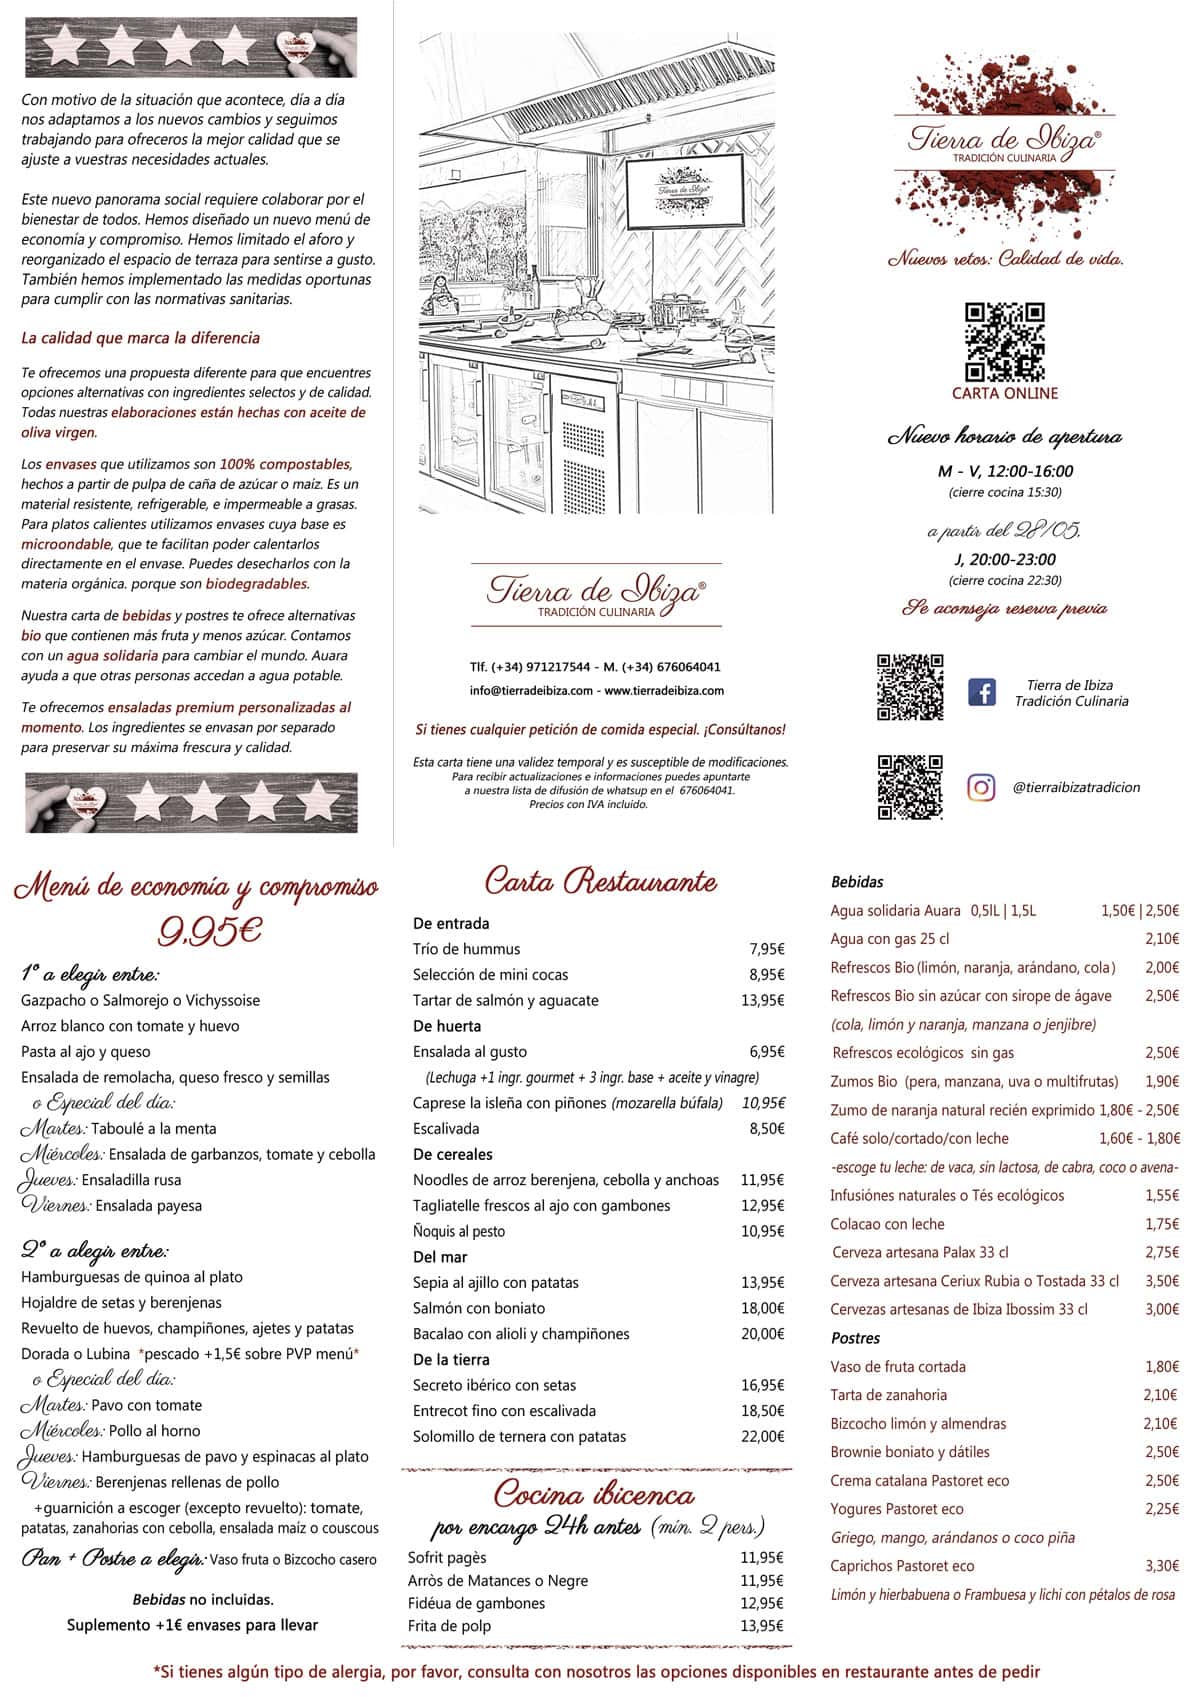 Carta-Tierra-de-Ibiza-tradizione culinaria 2020